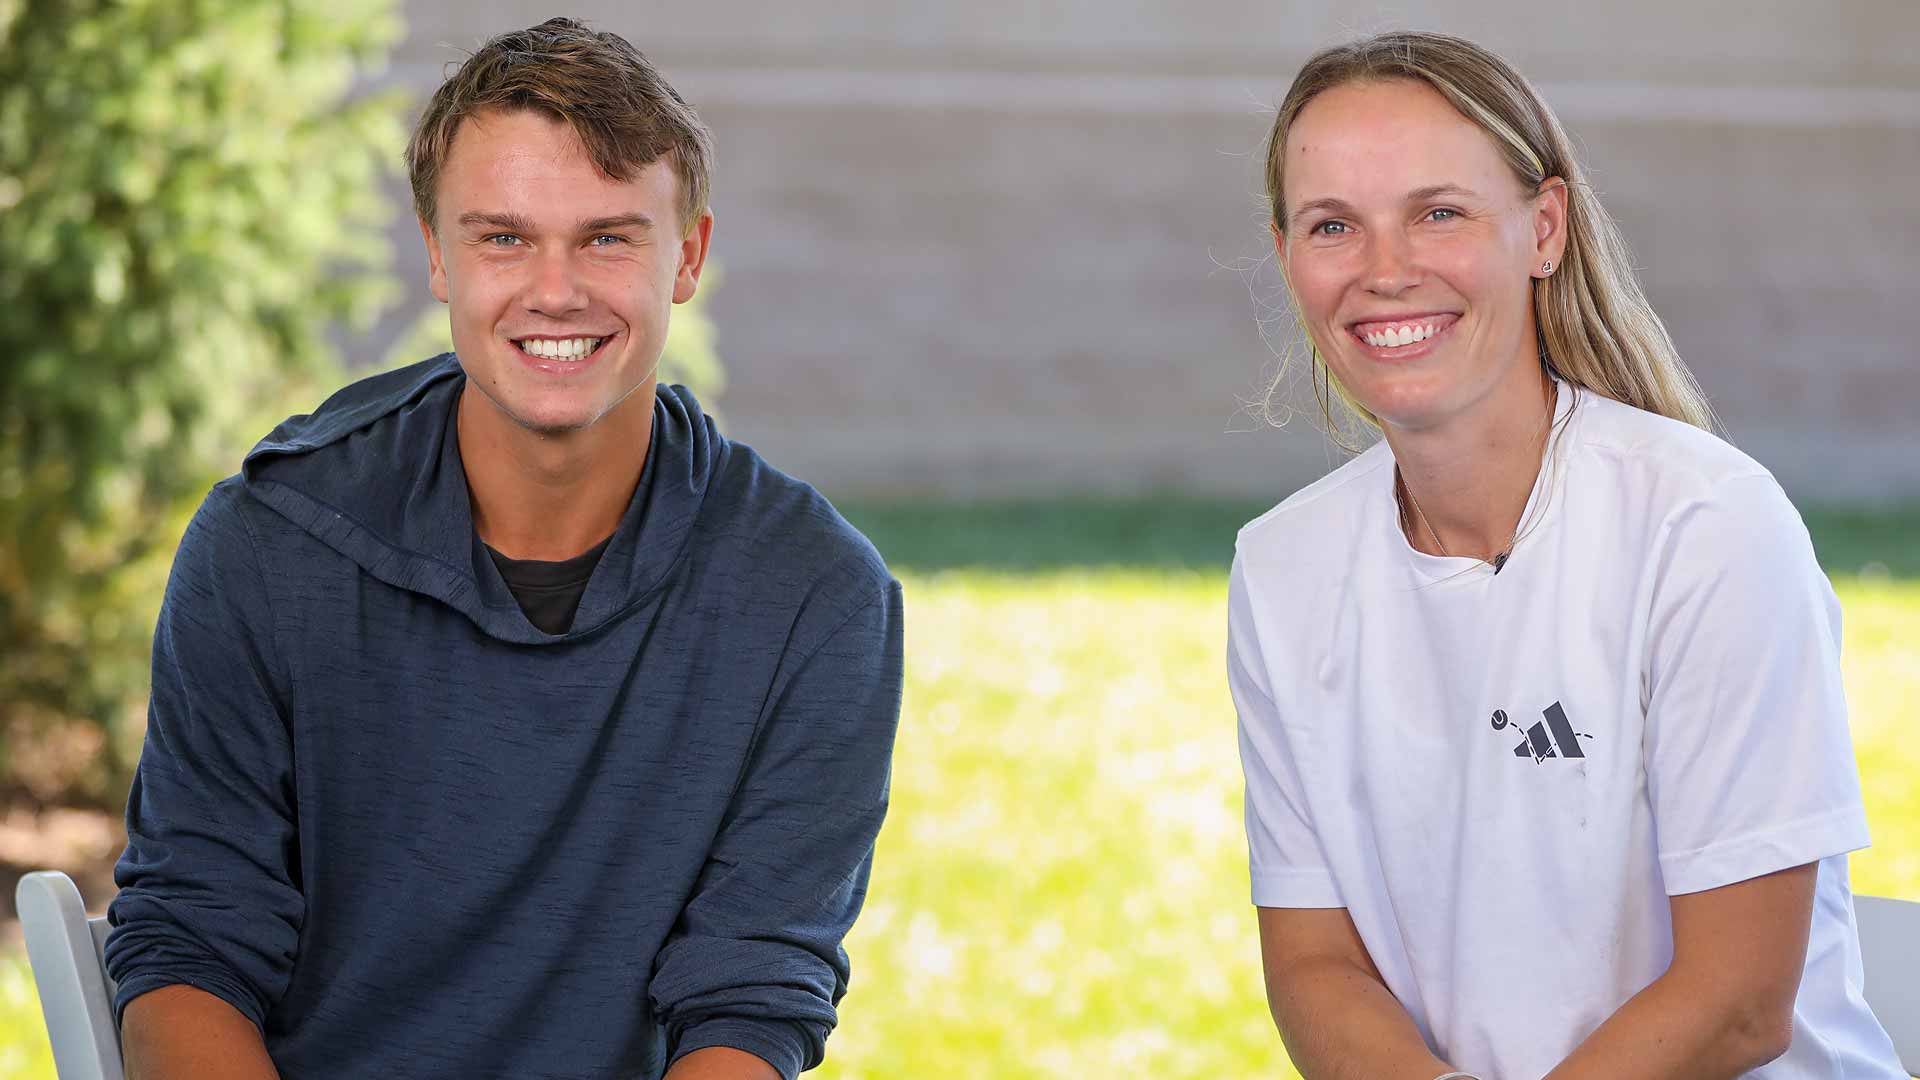 Holger Rune y Caroline Wozniacki pasaron tiempo juntos en Cincinnati antes del Western & Southern Open.